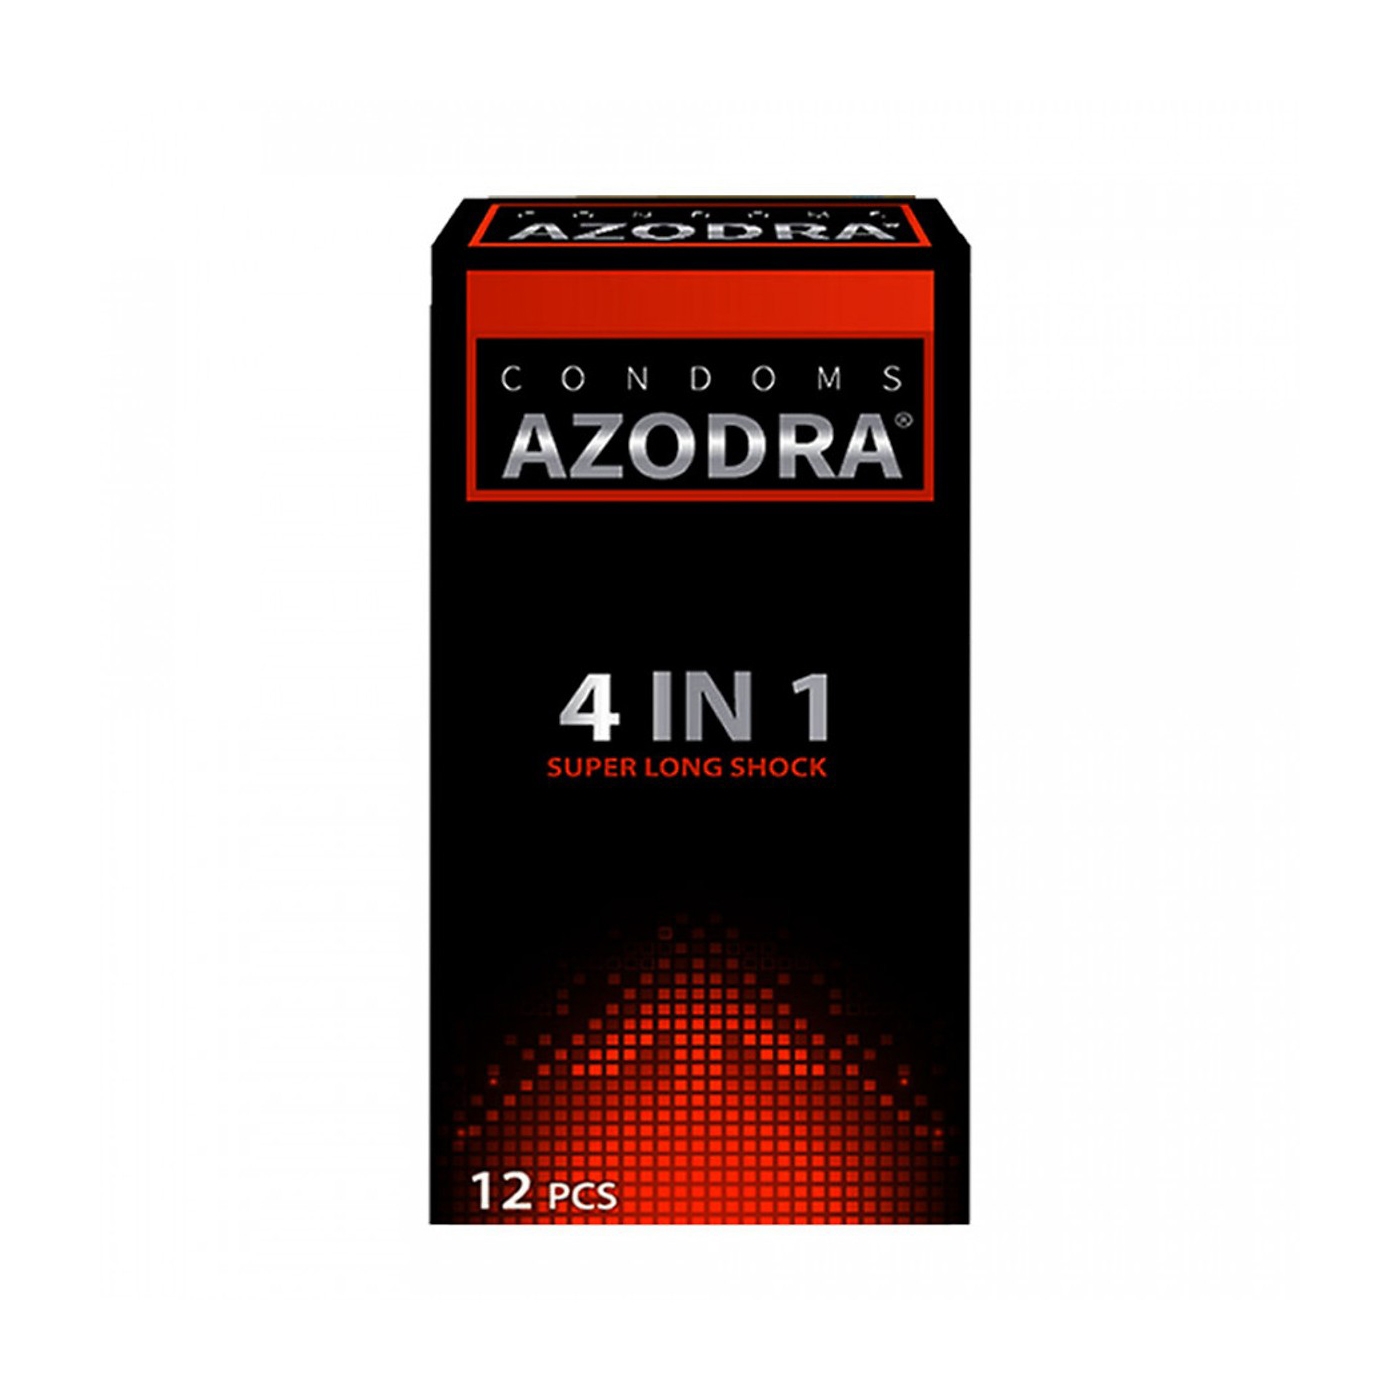 Bao cao su Azodra 4 in 1 Super Long Shock màu đỏ, Hộp 12 cái